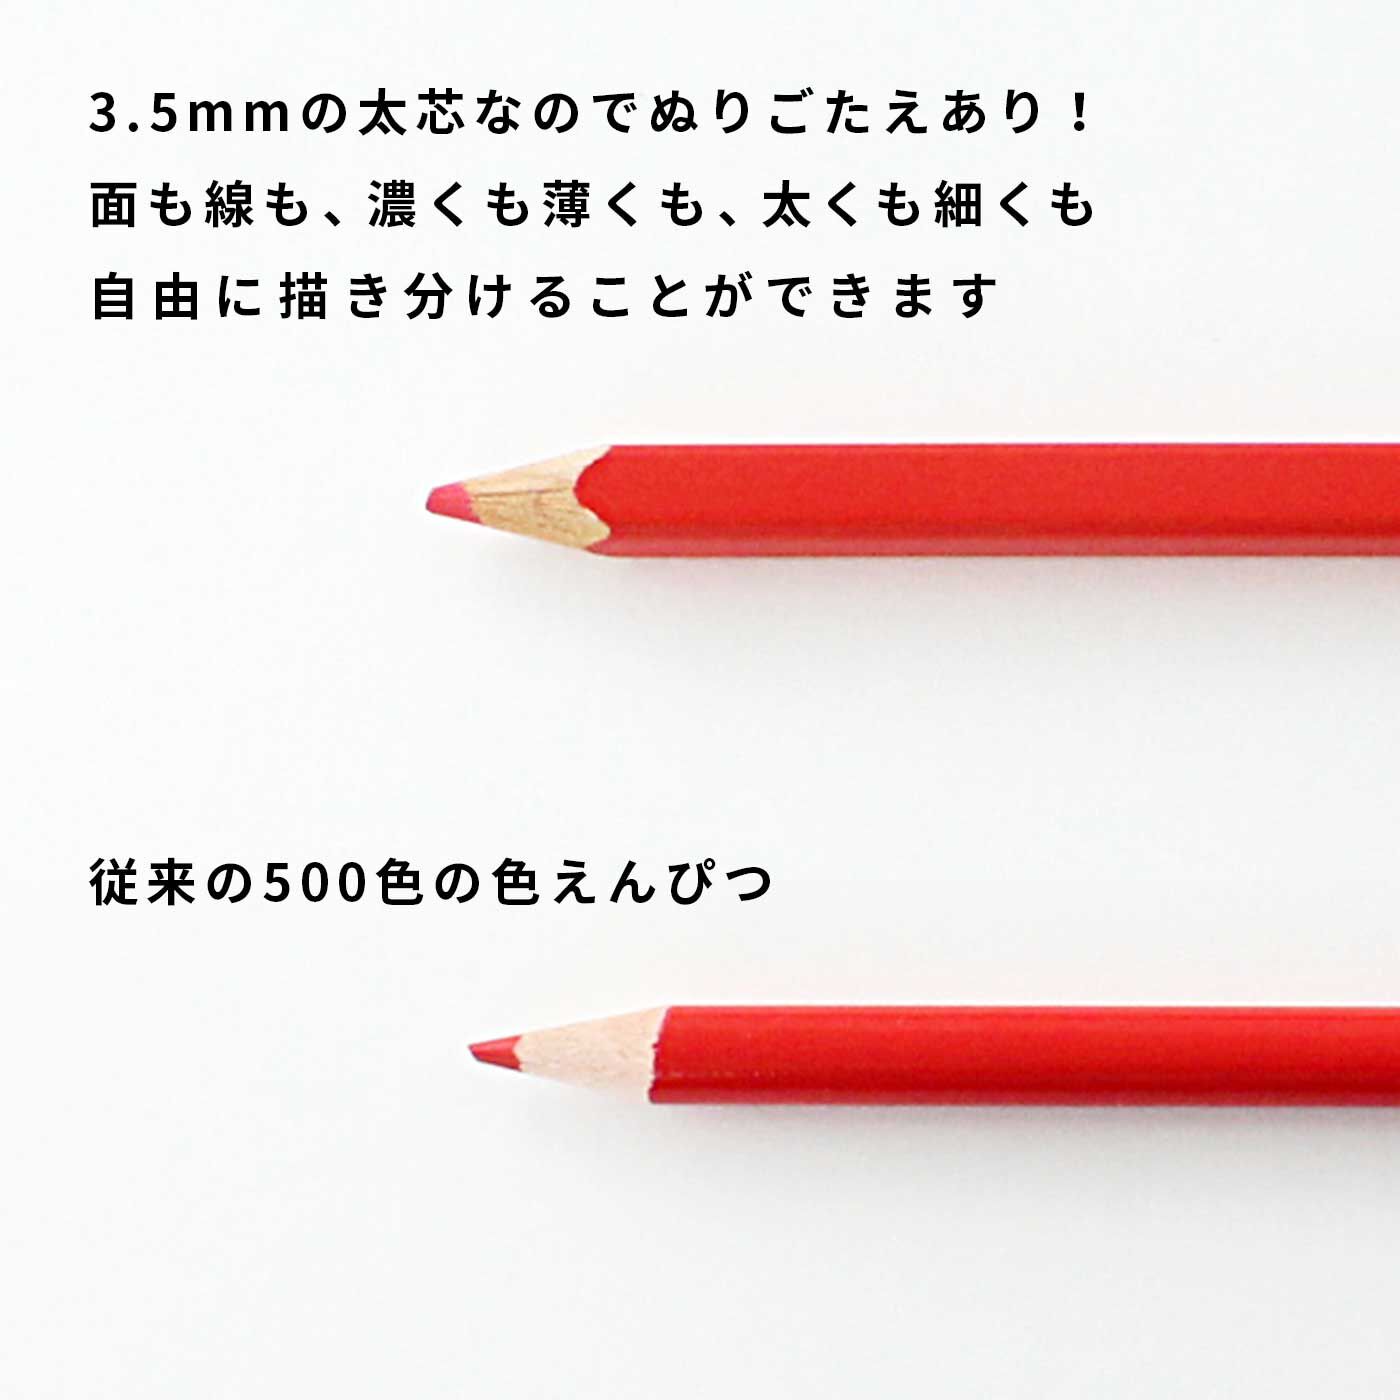 フェリシモ 500色の色えんぴつ TOKYO SEEDS 「セット割り」追加ご注文